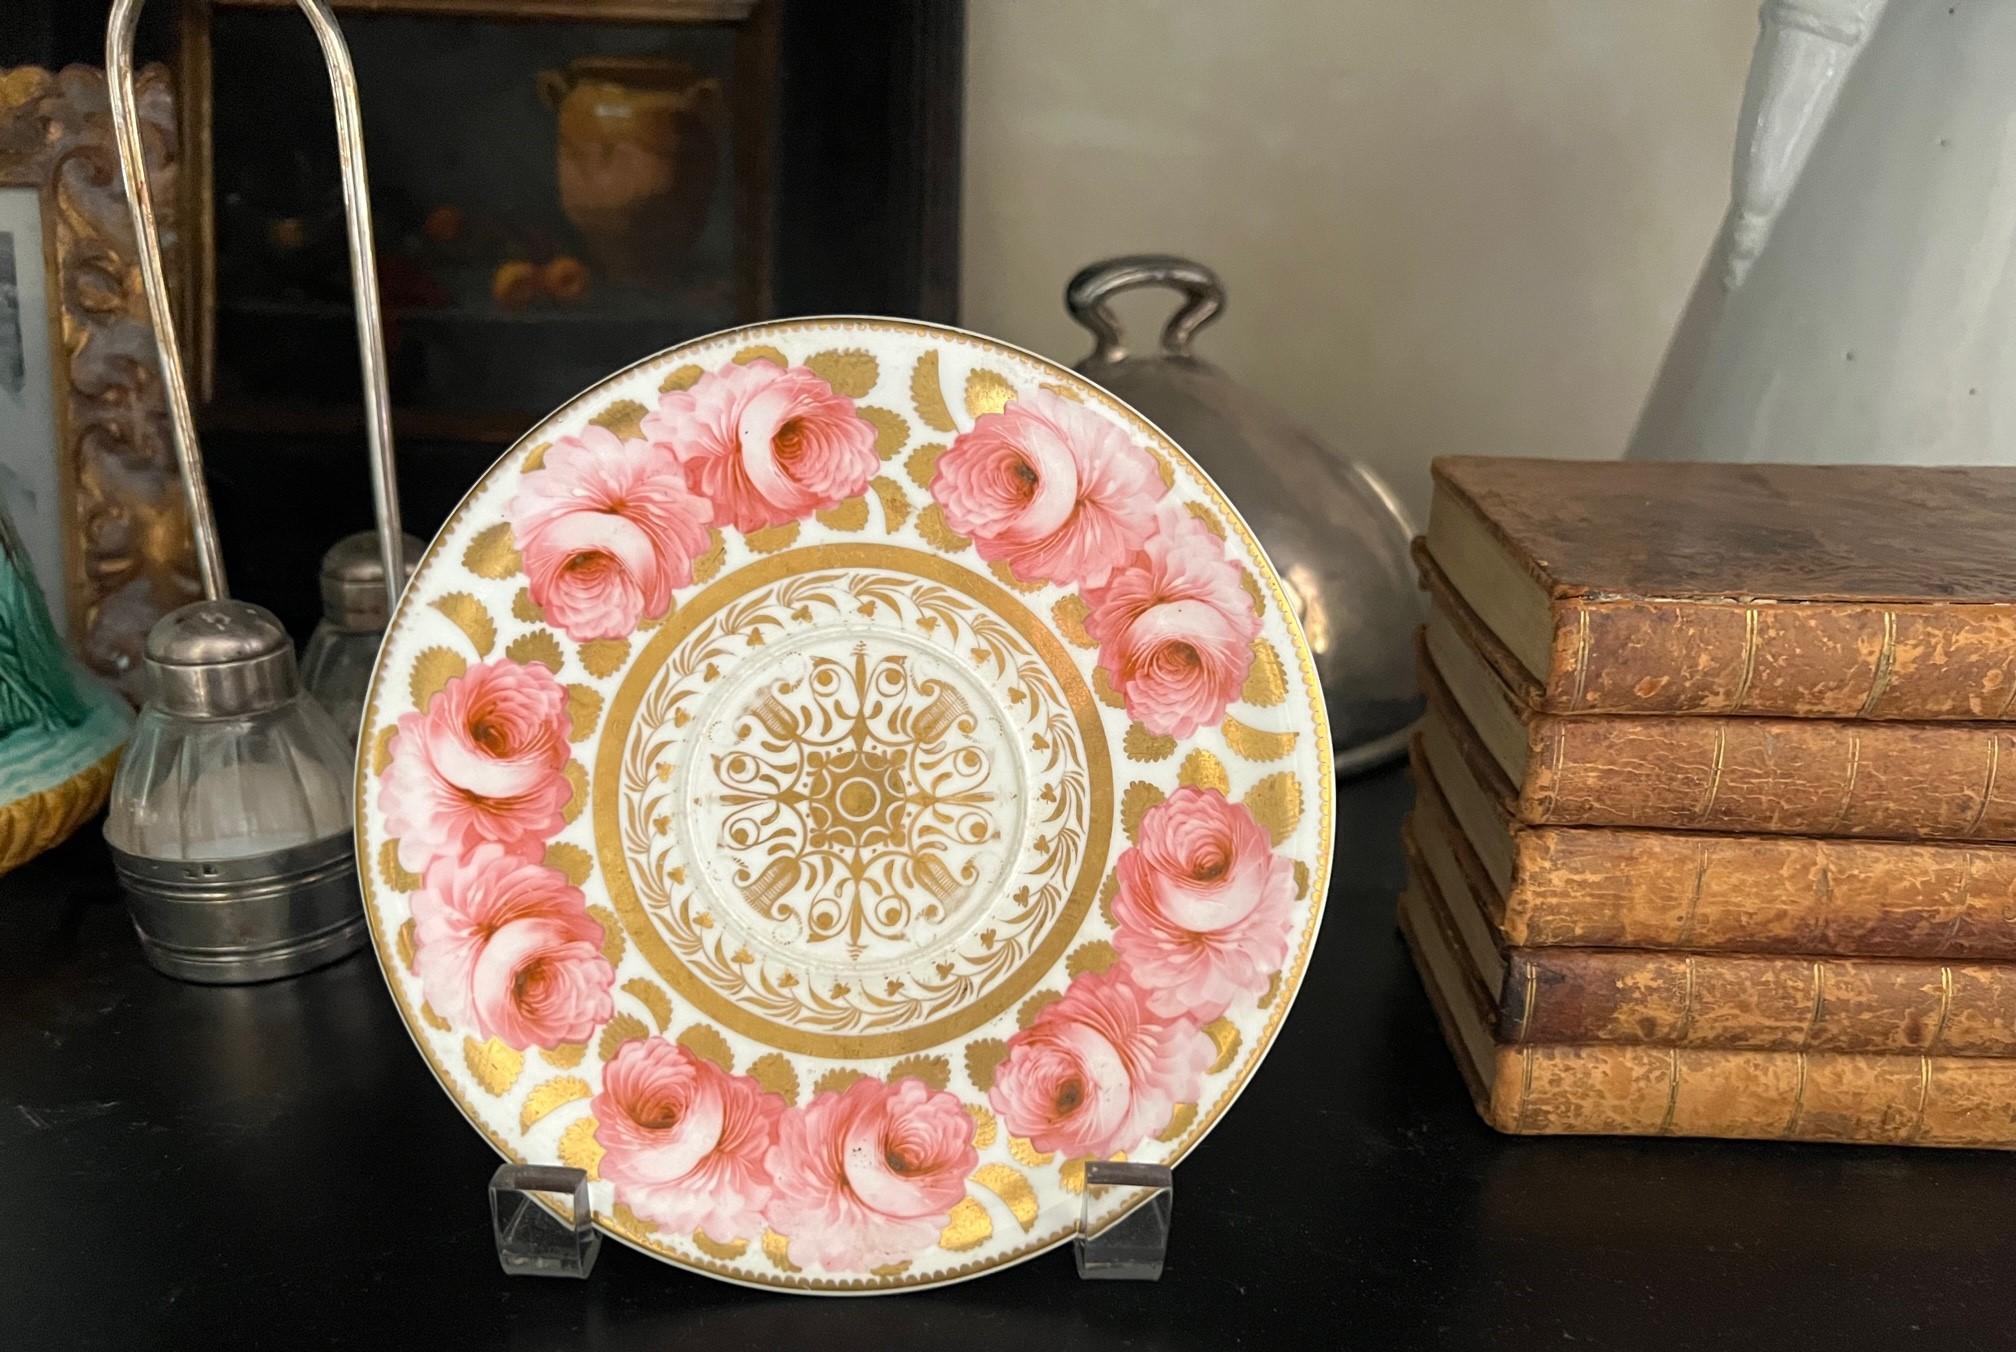 Assiette / soucoupe finement peinte d'époque Régence avec des roses roses et des feuilles dorées, fabriquée en Angleterre vers 1820.